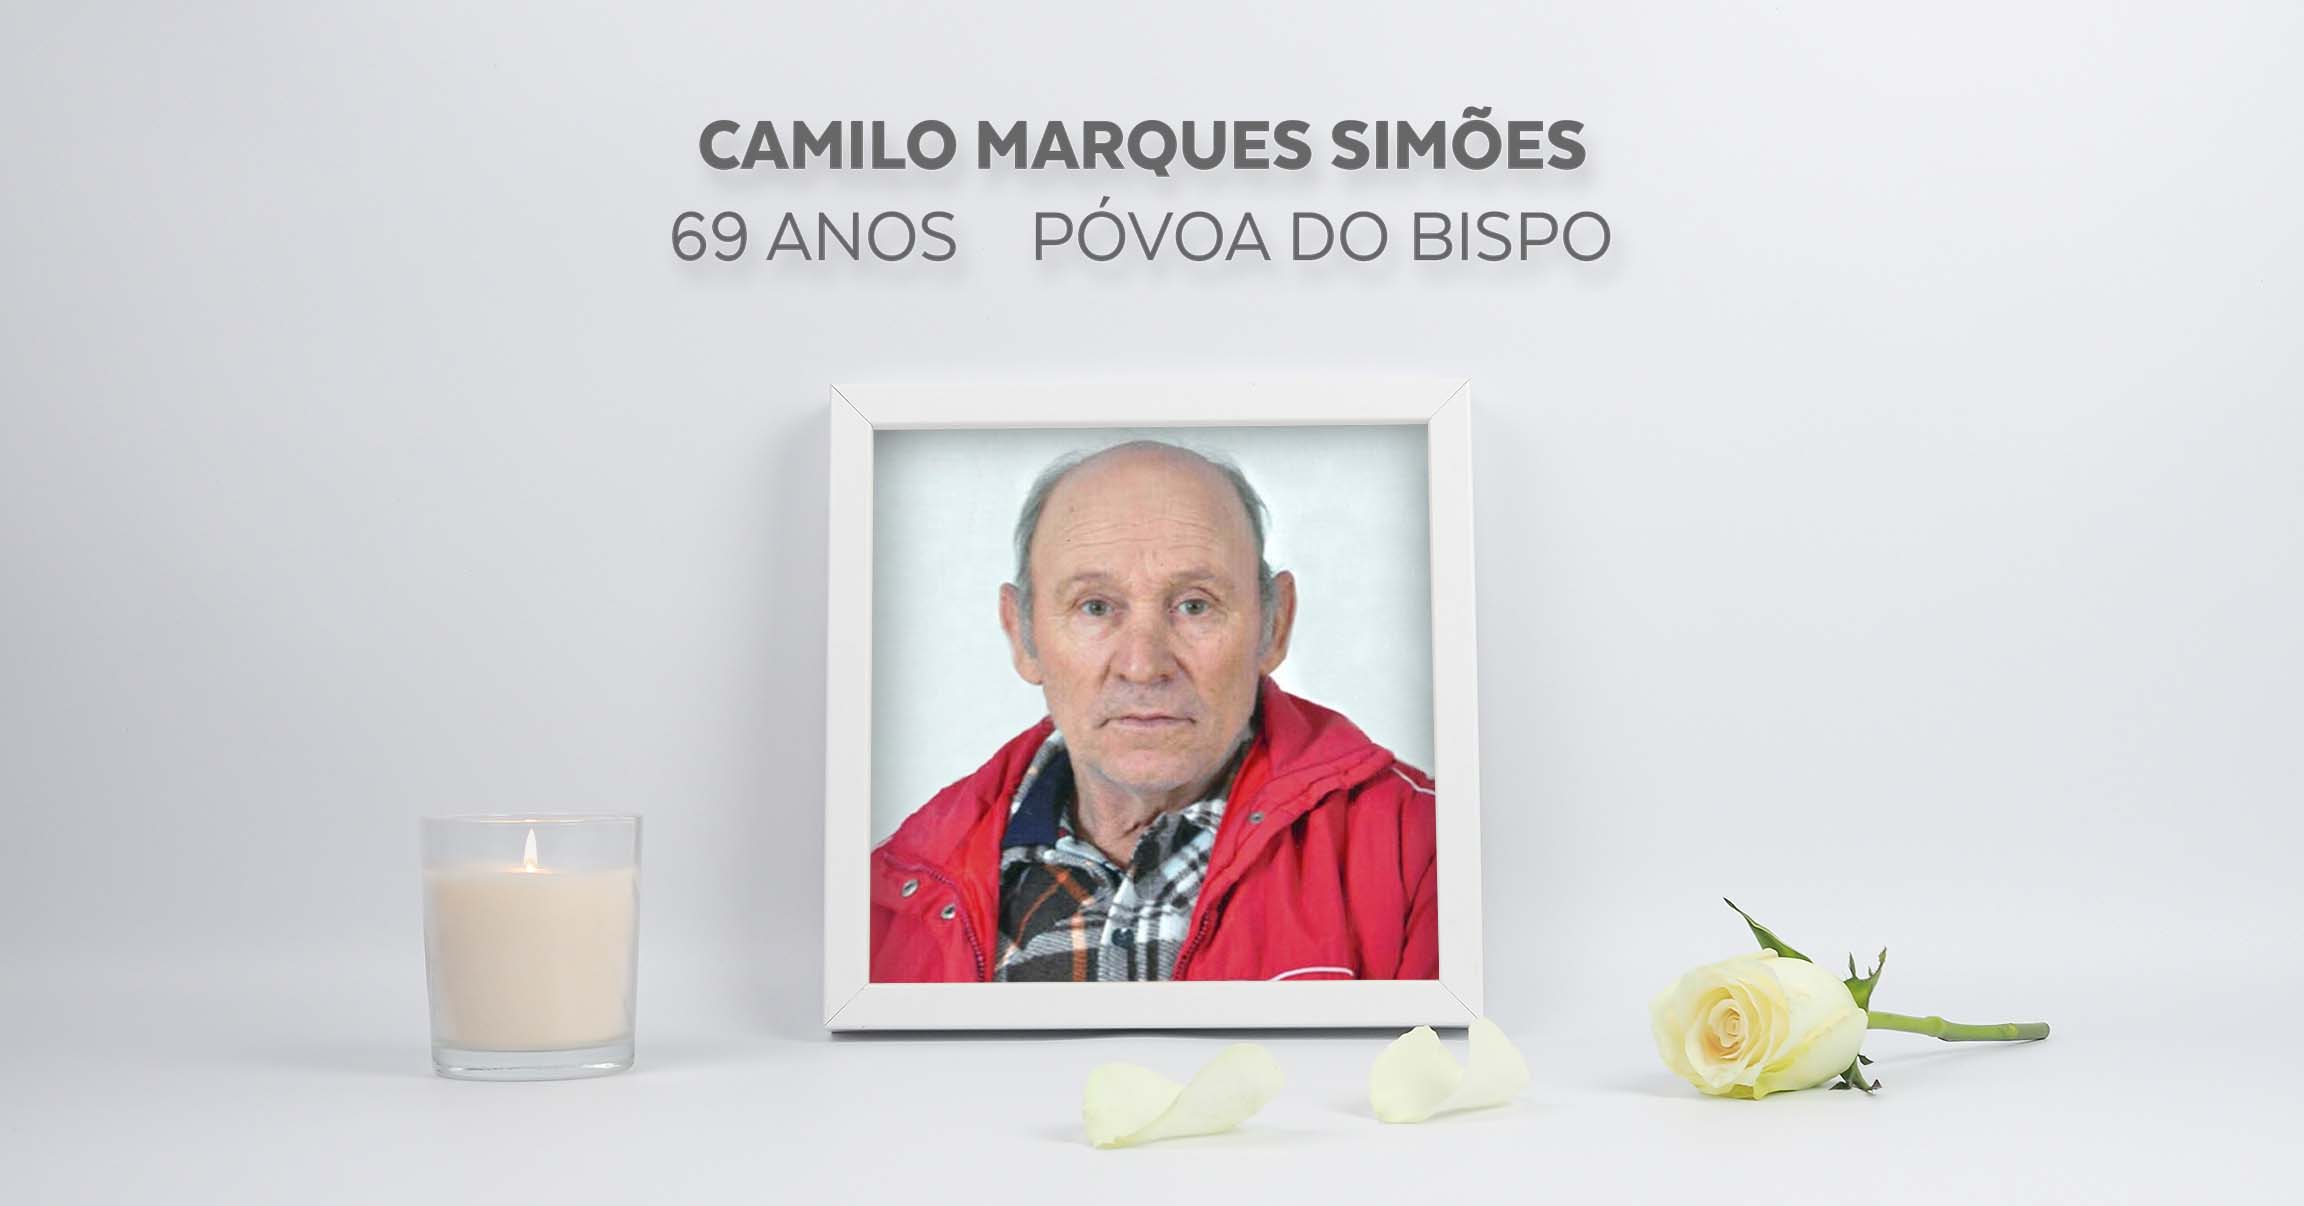 Camilo Marques Simões